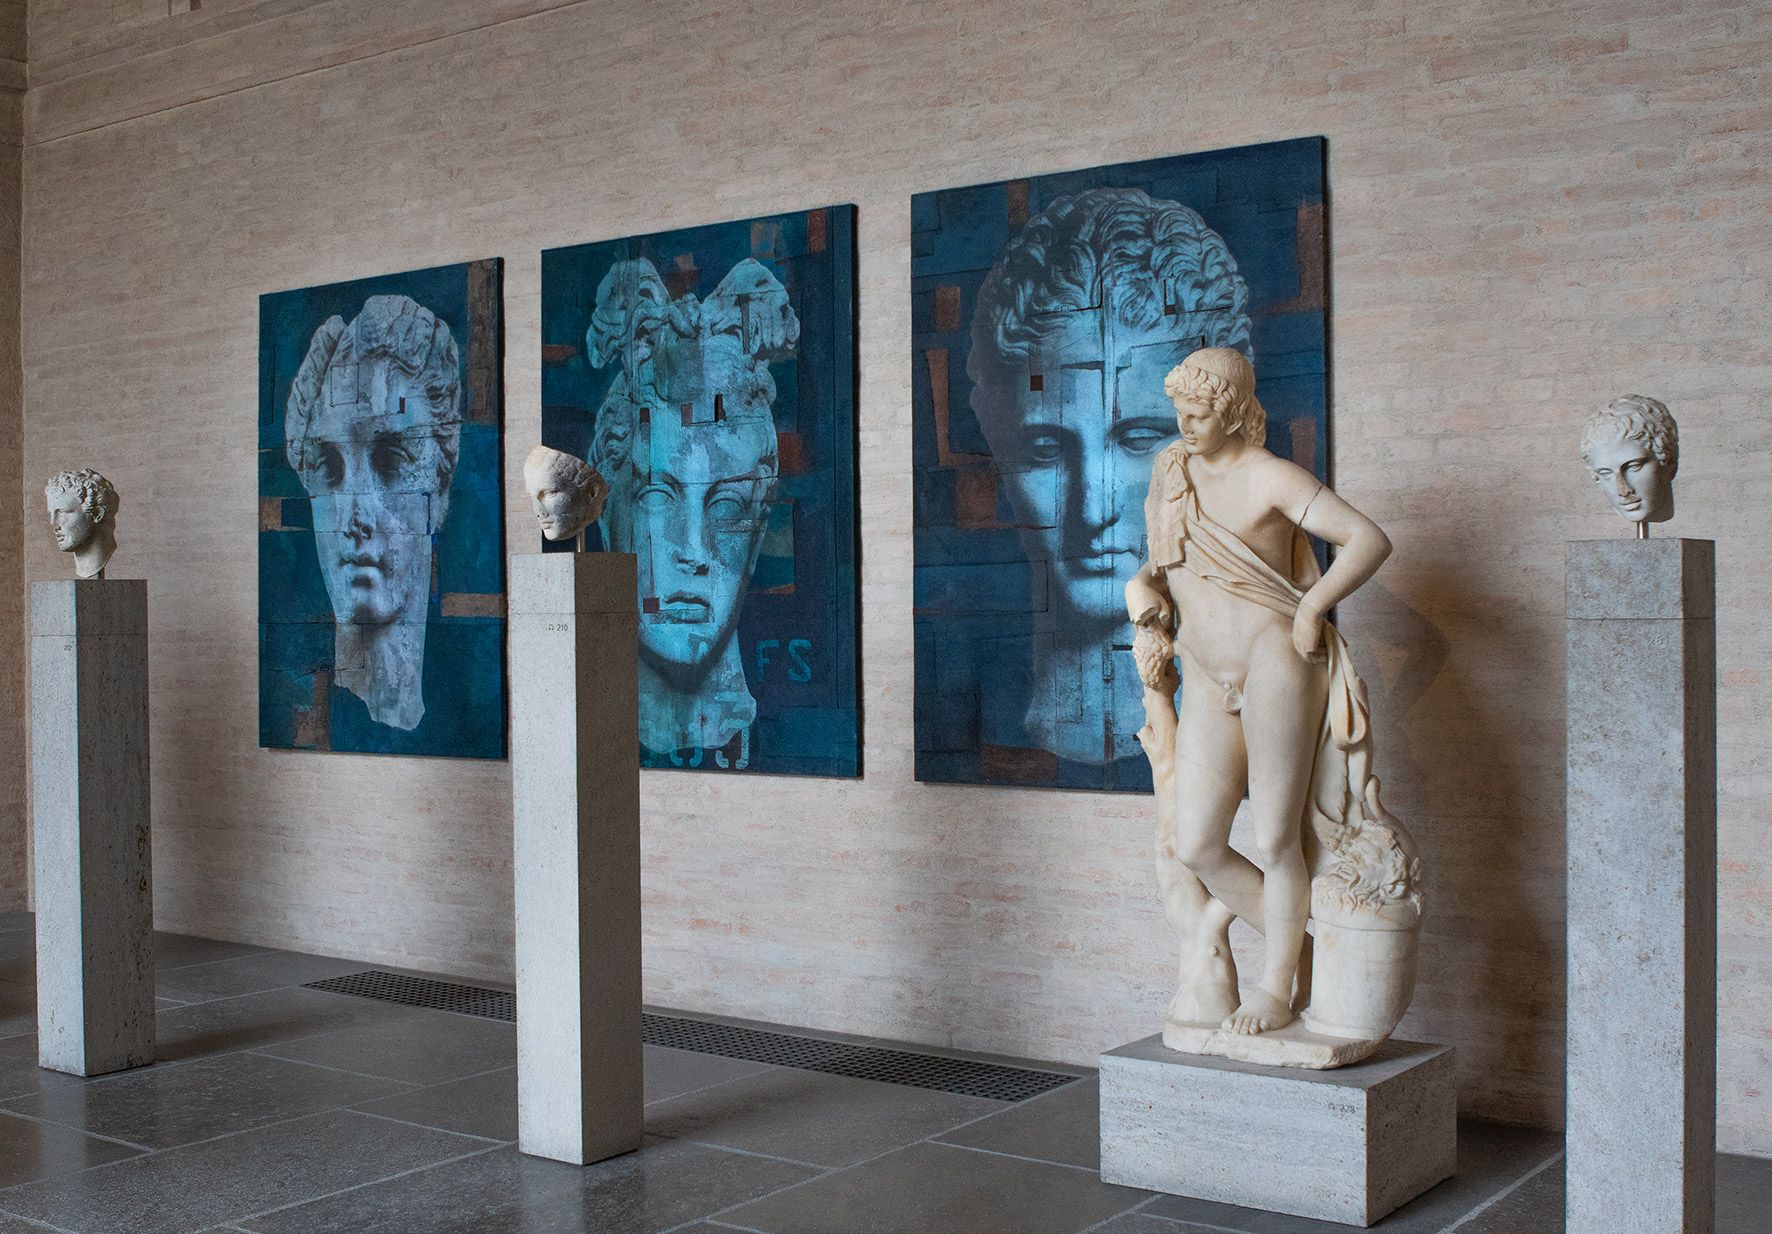 Luca Pignatelli brings "Muse" to the Glyptothek in Munich